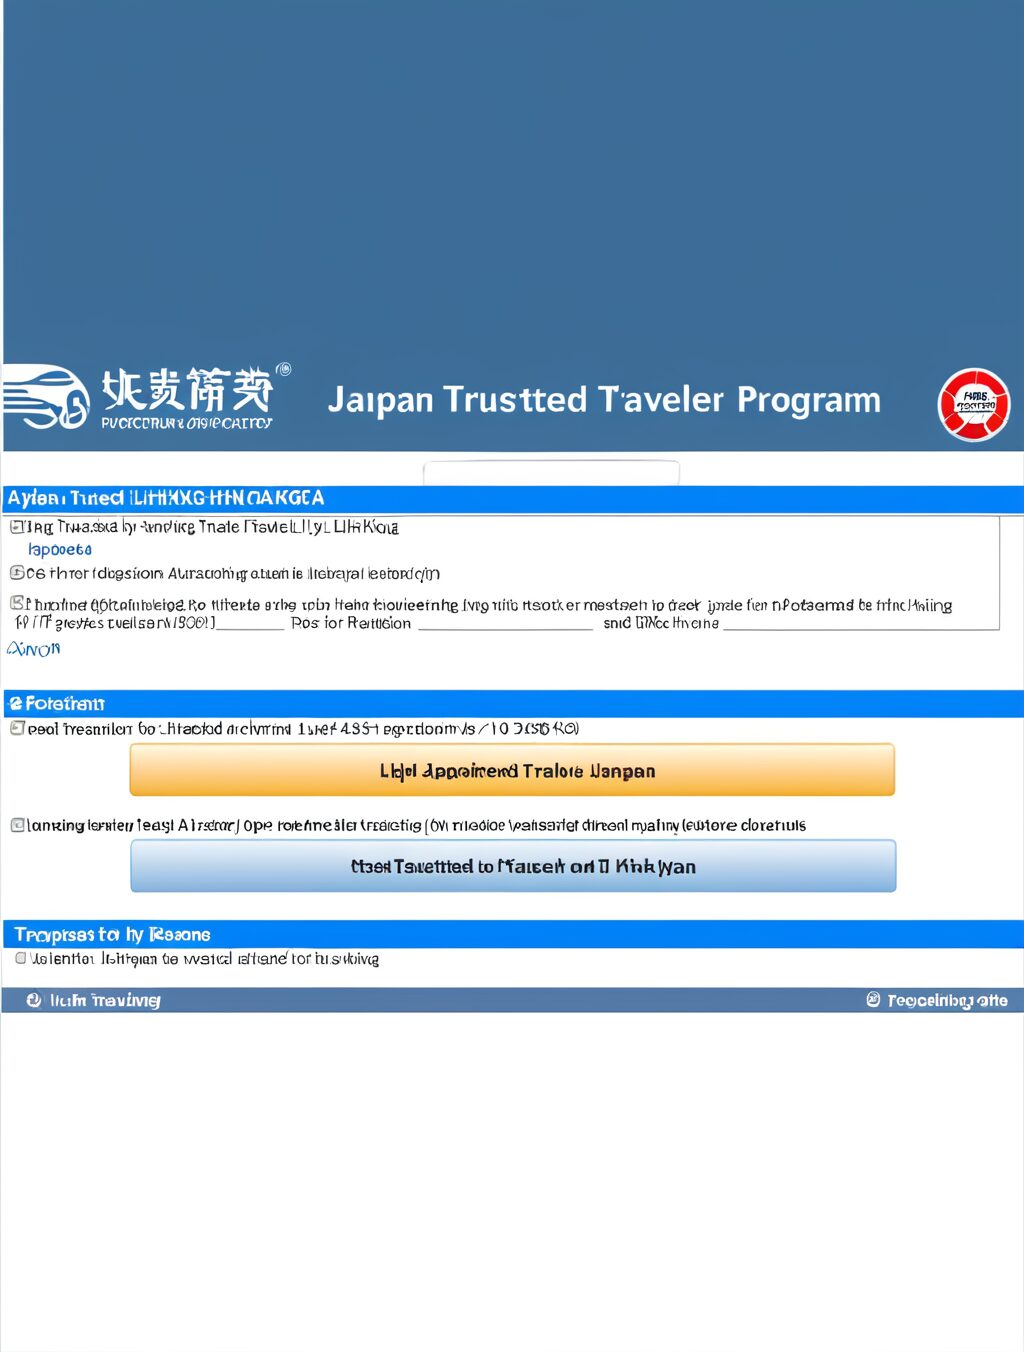 japan trusted traveler program lihkg